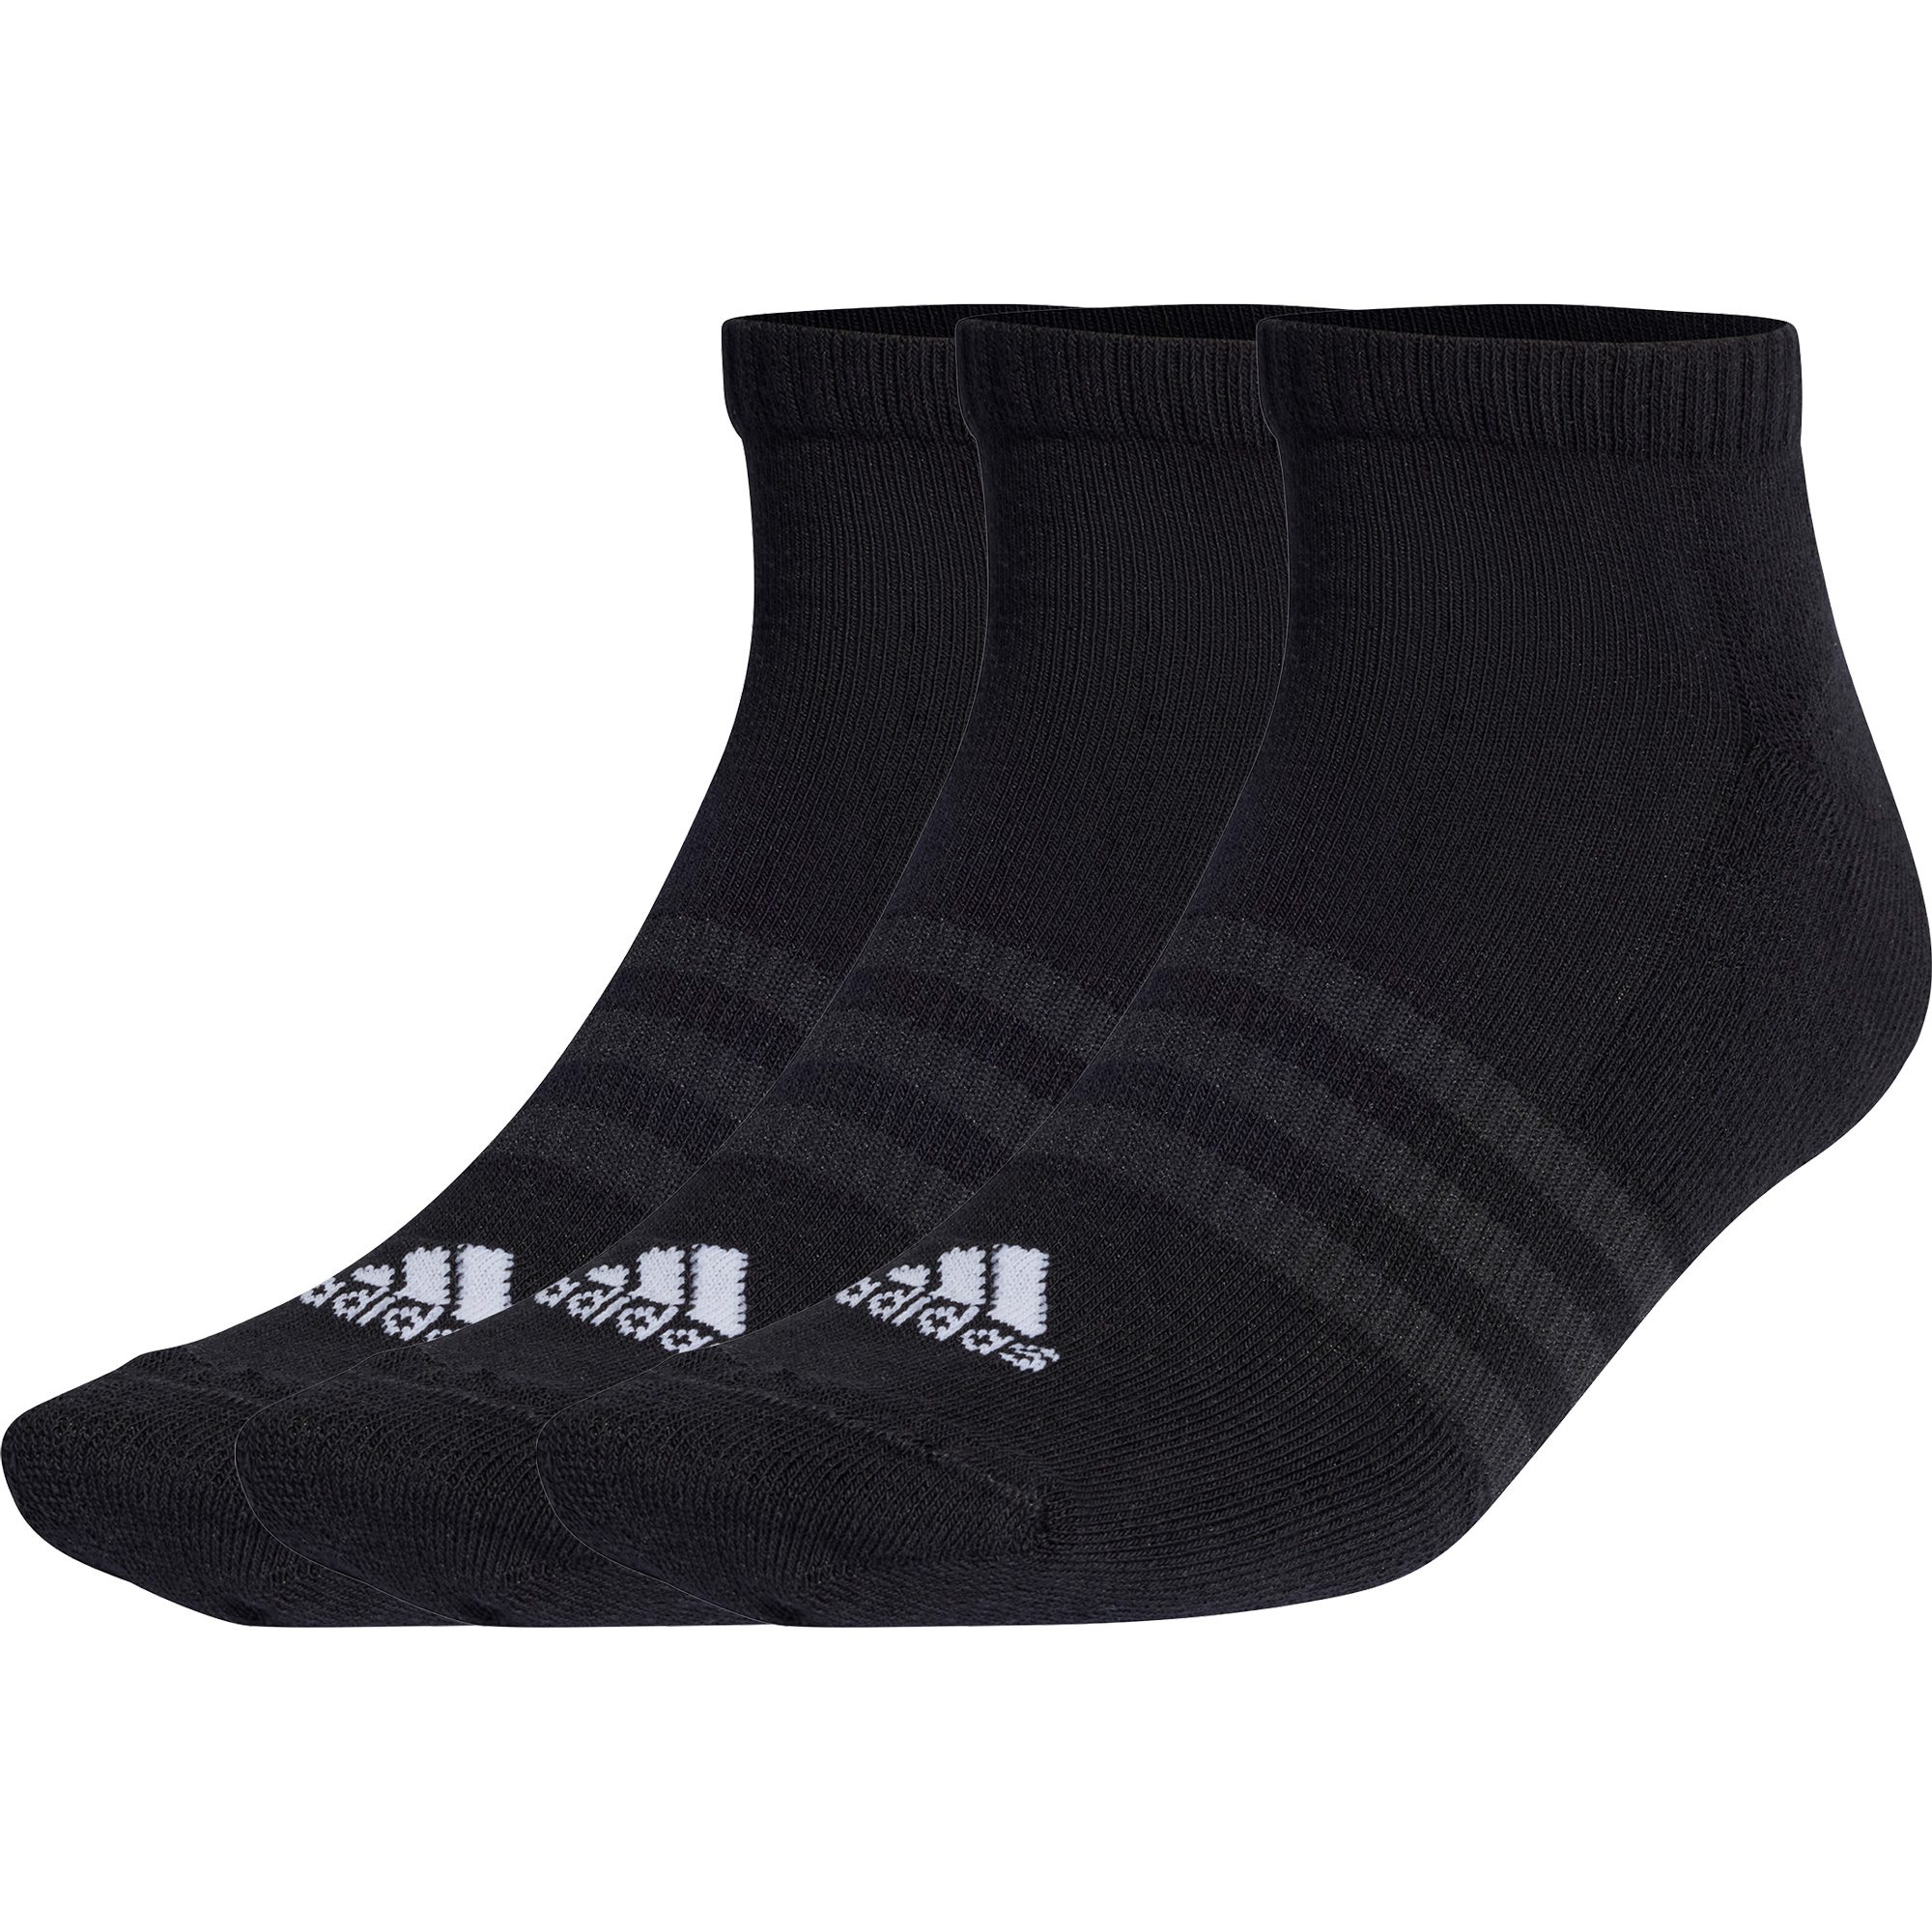 adidas - Cushioned Low-Cut Socken 3 Paar schwarz kaufen im Sport Bittl Shop